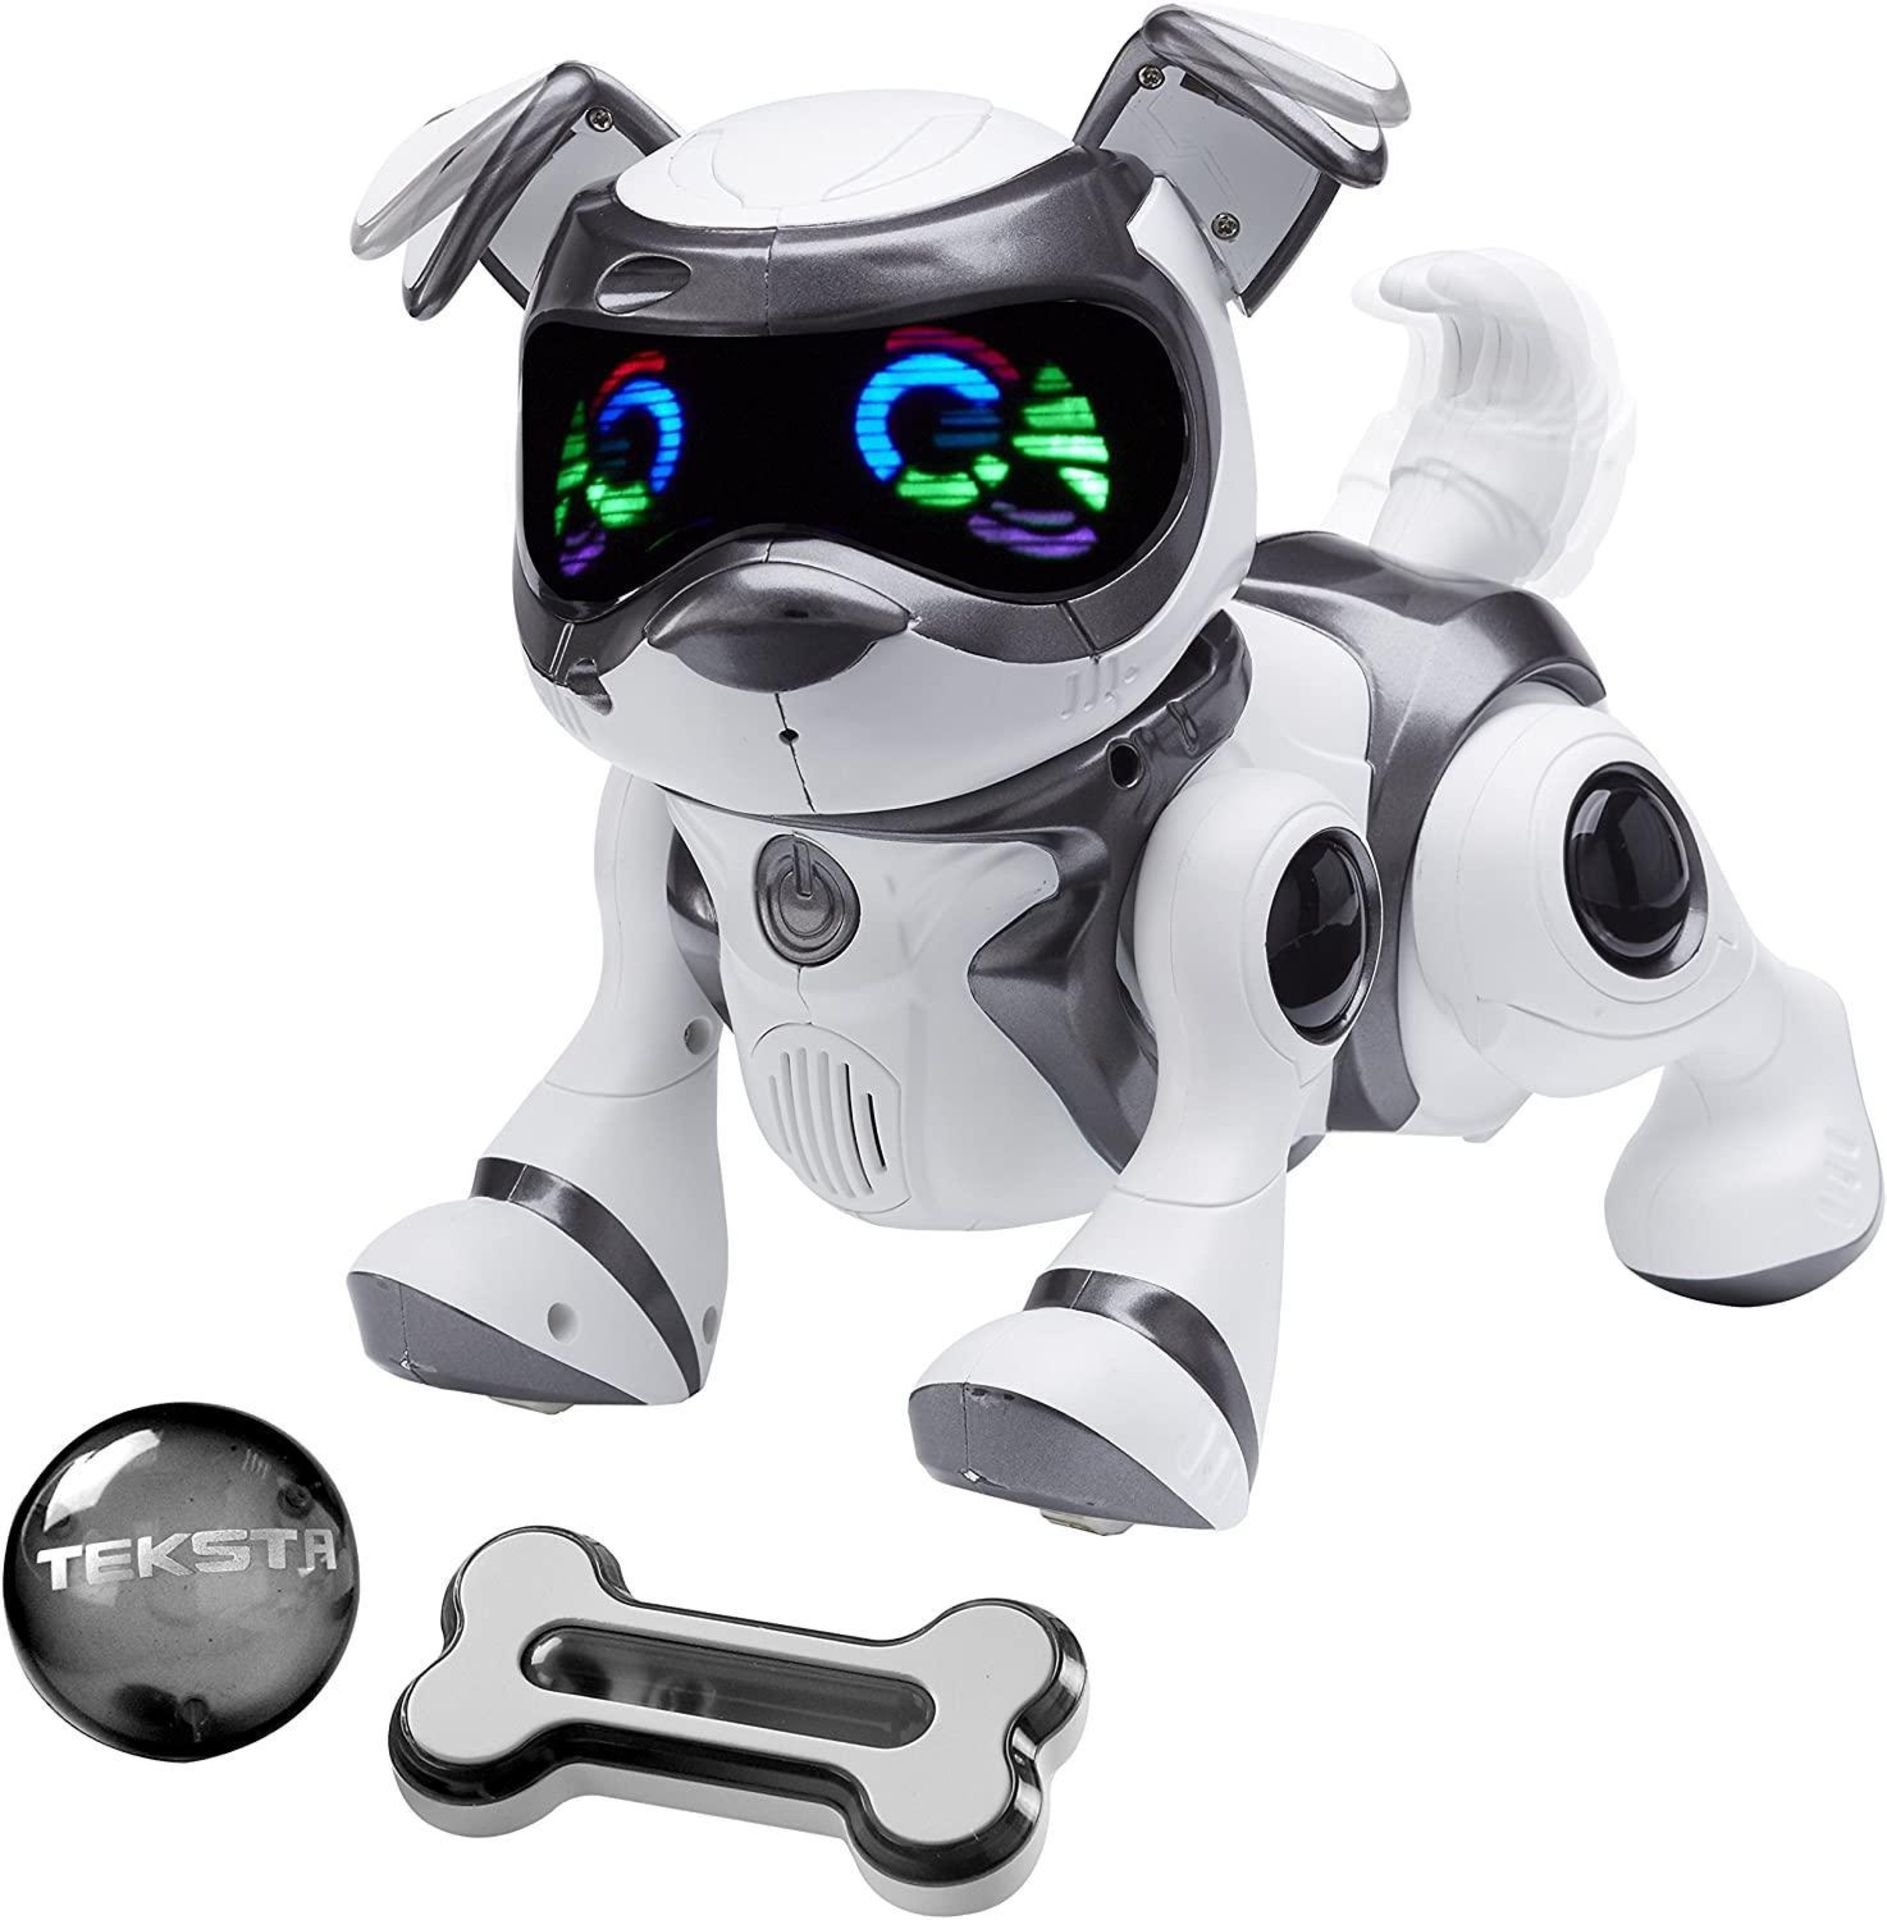 Teksta Voice Recognition Robot Puppy (558/8101) - £60.00 RRP